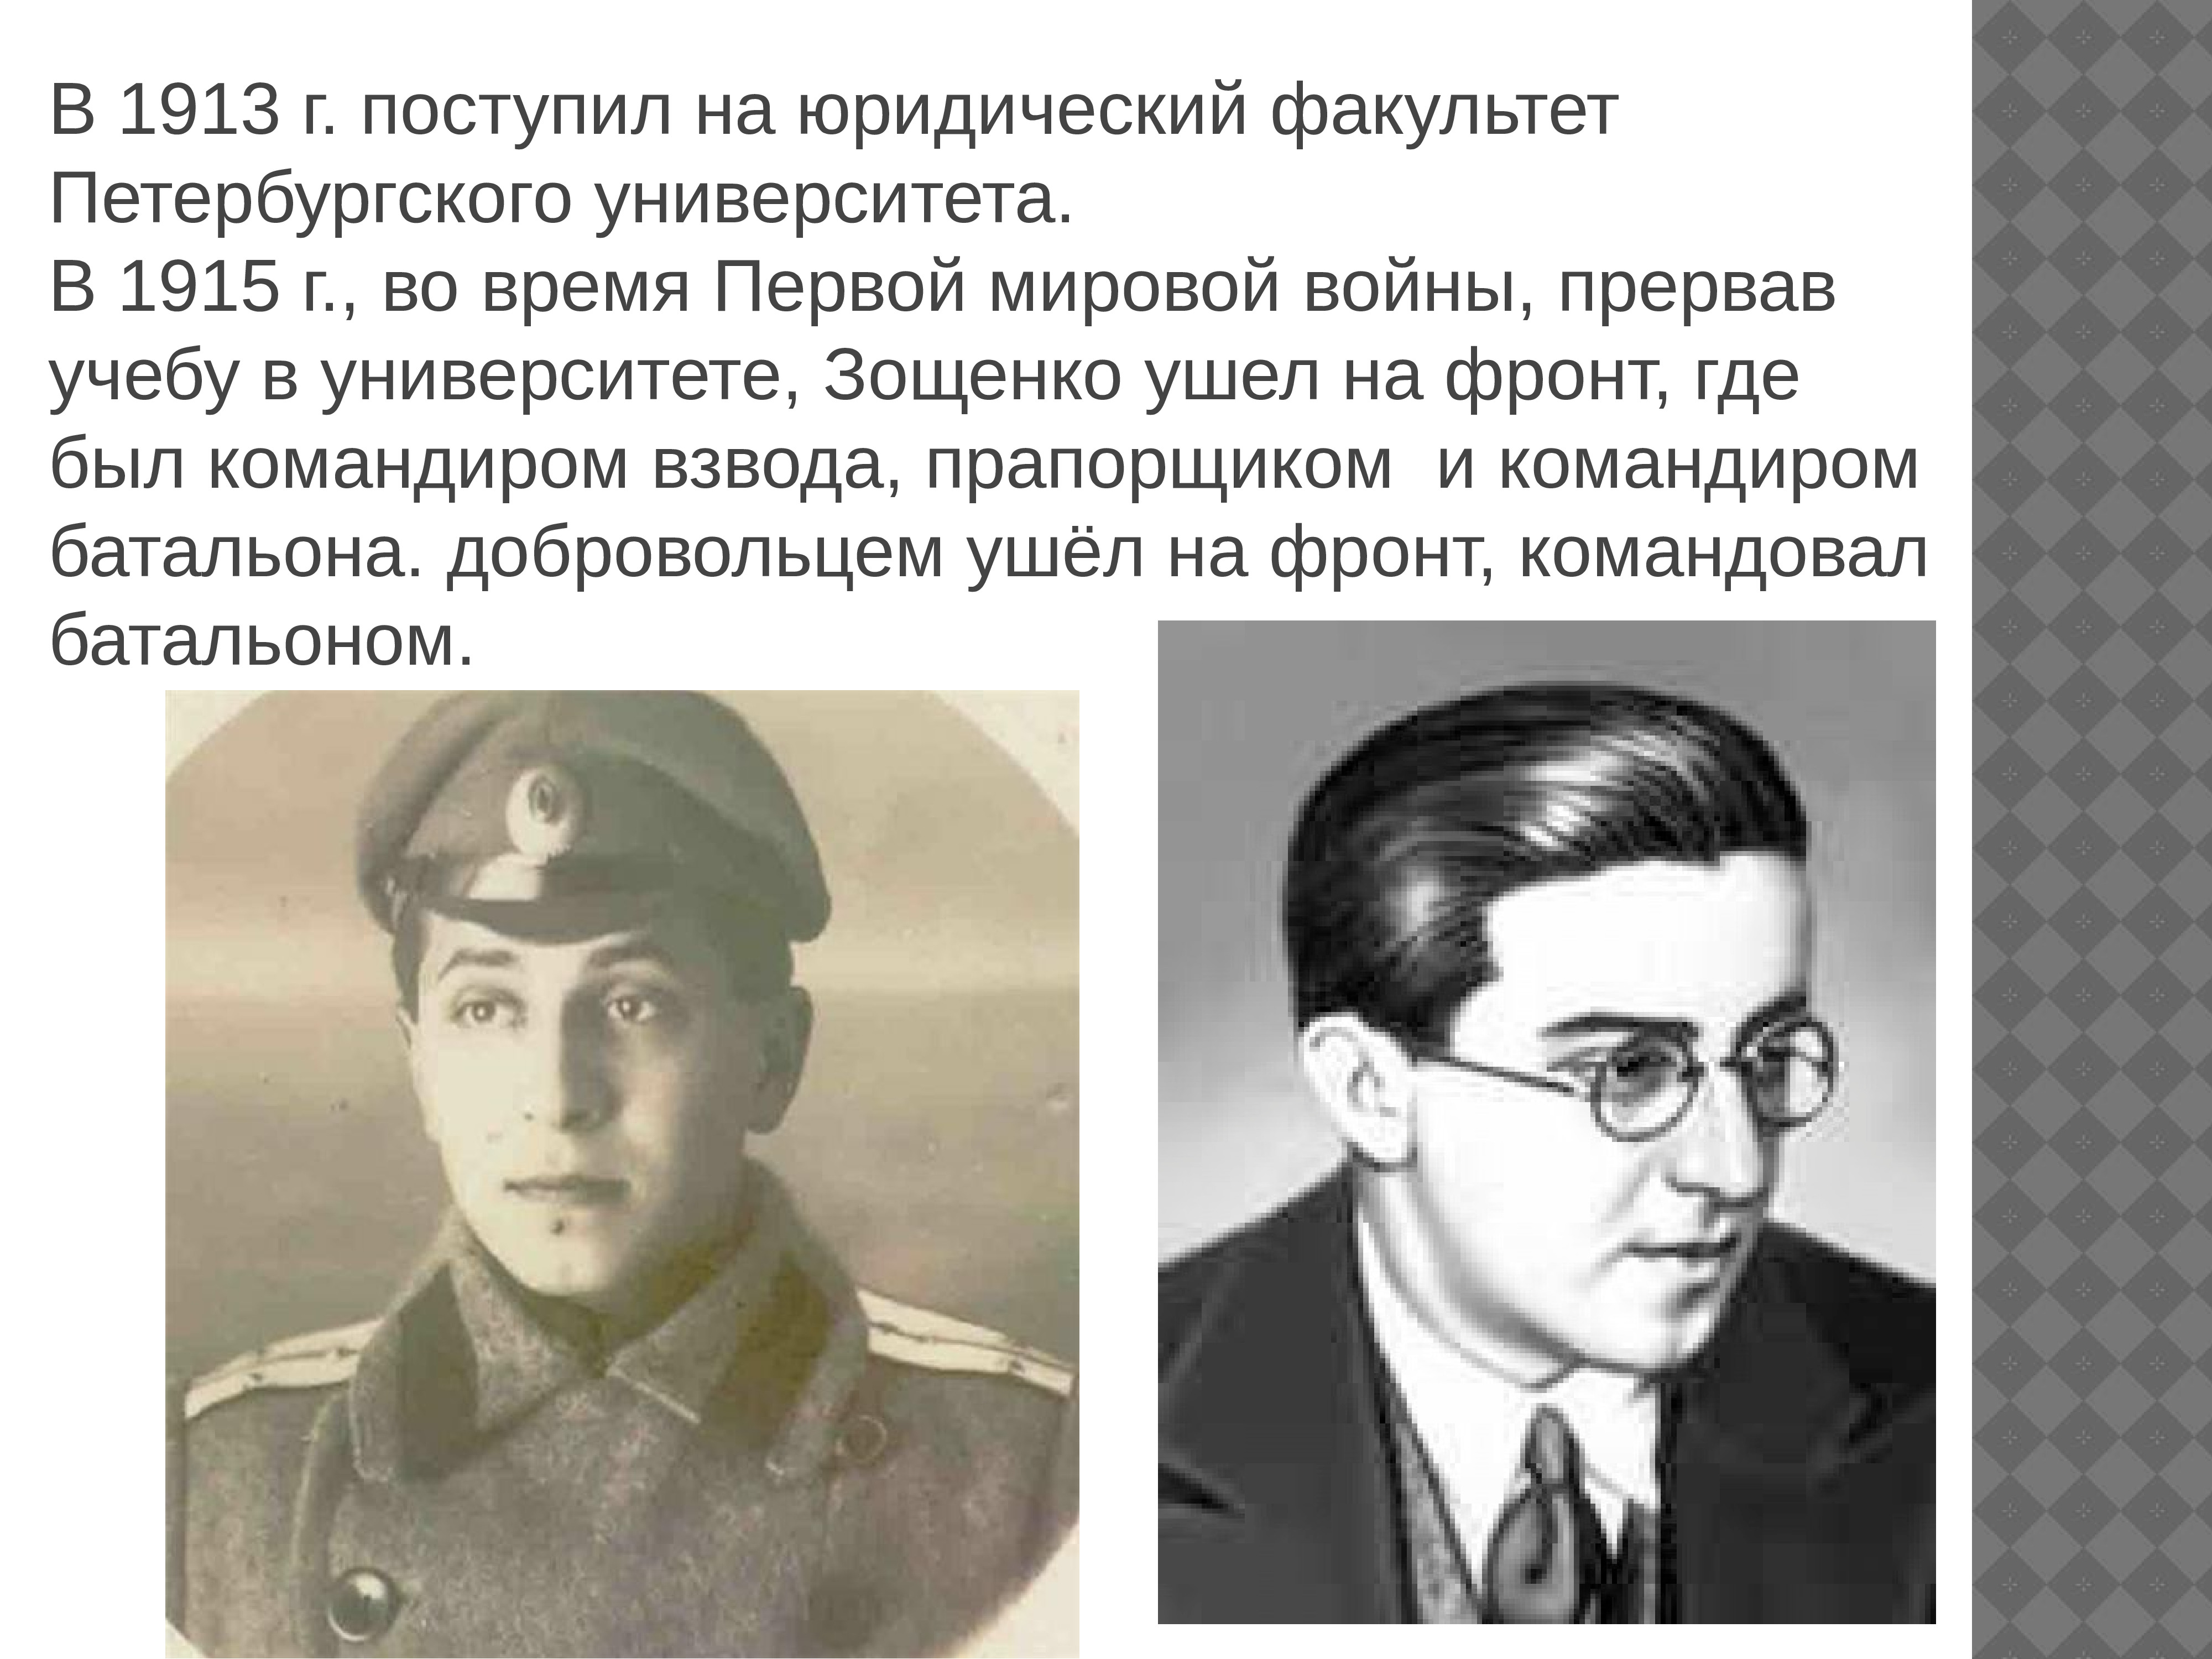 3 факта о зощенко. Зощенко 1915.